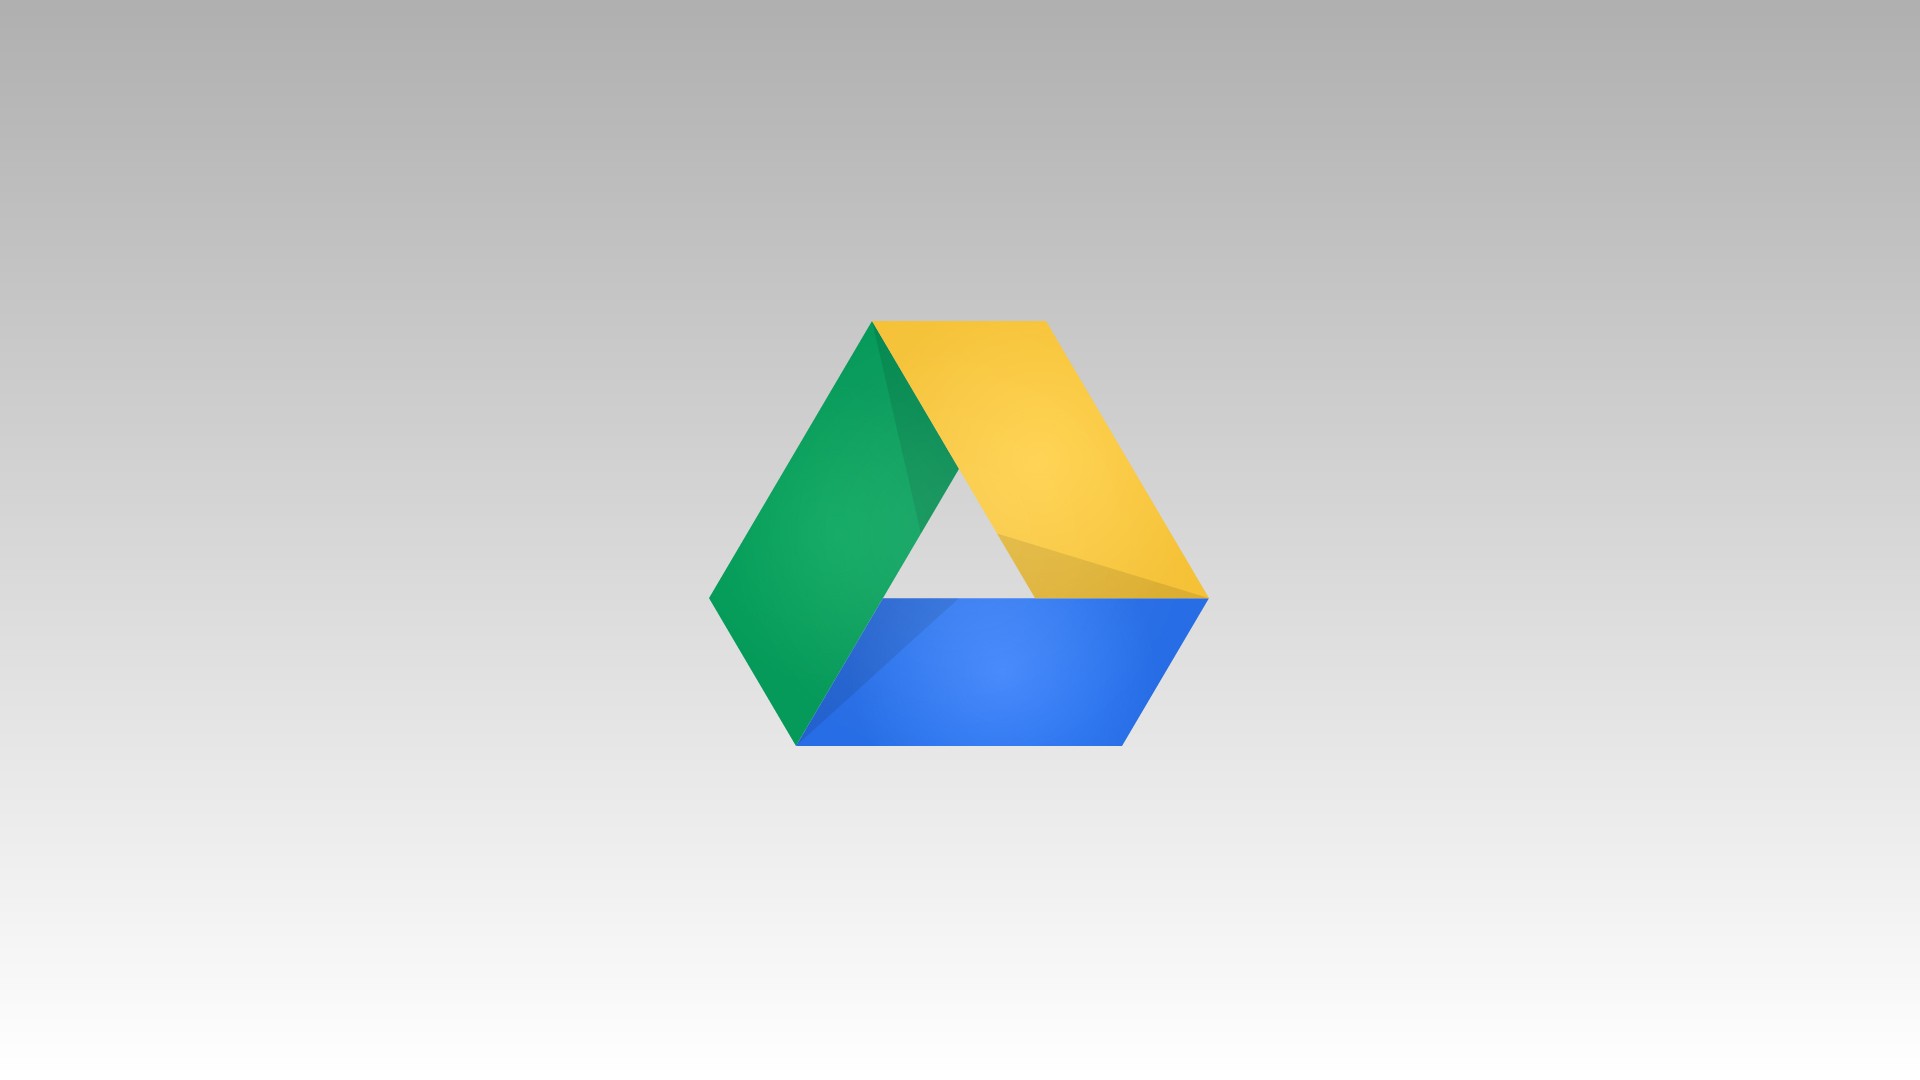 ค้นหาไฟล์ใน Google Drive ง่ายขึ้นและสะดวกขึ้น